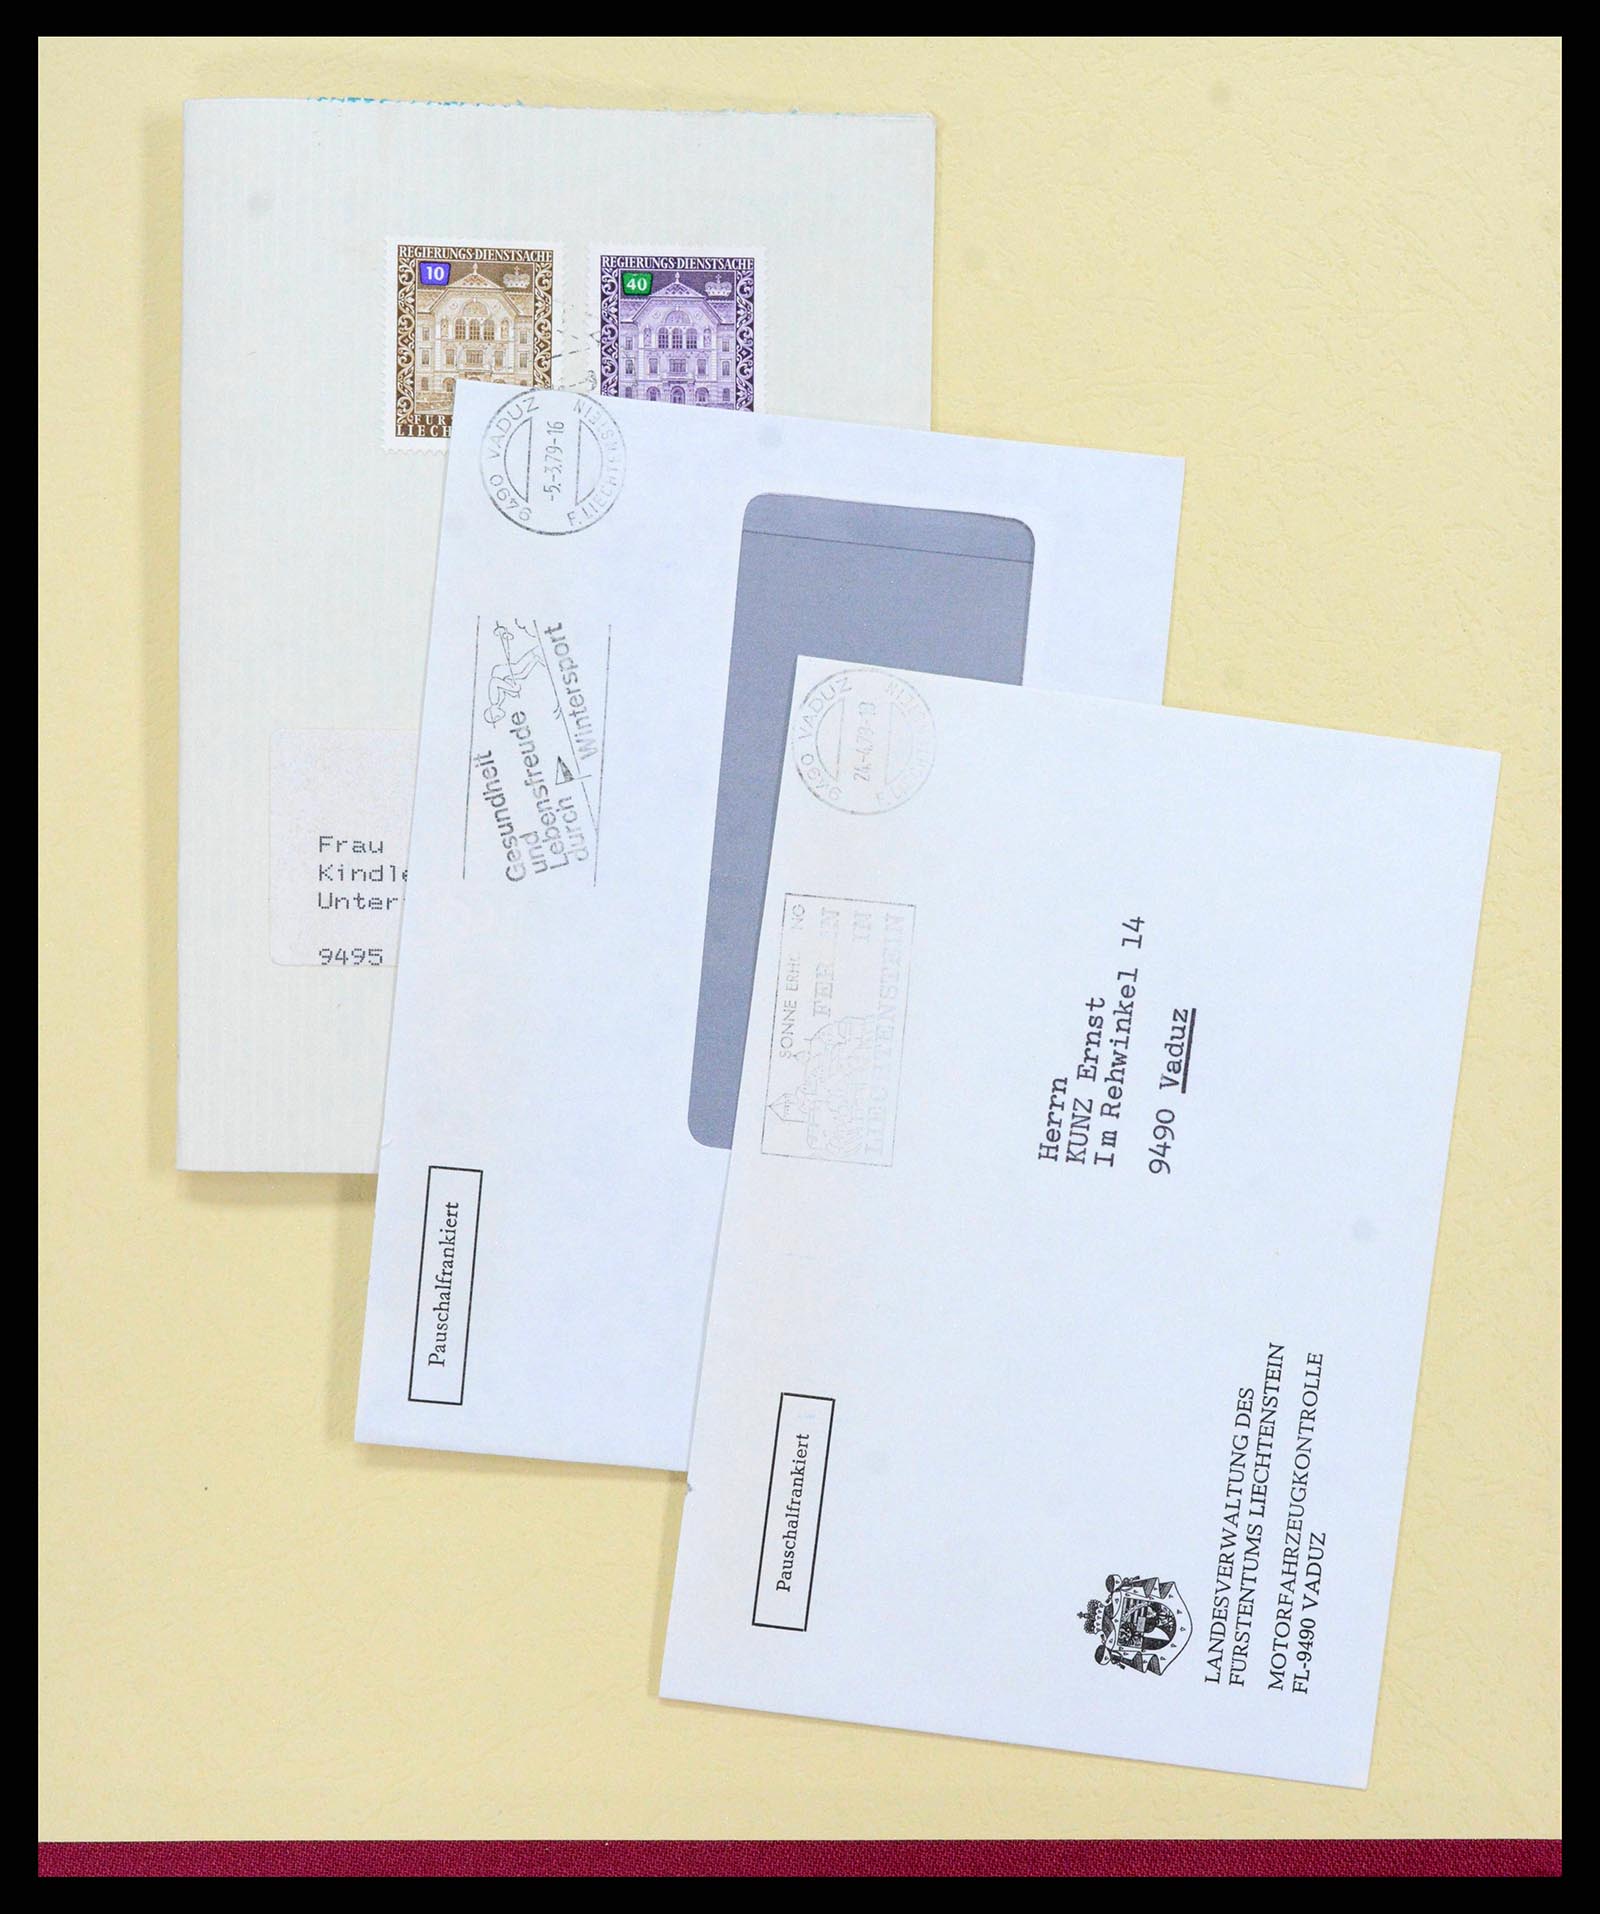 38204 0061 - Stamp collection 38204 Liechtenstein service covers 1932-1989.